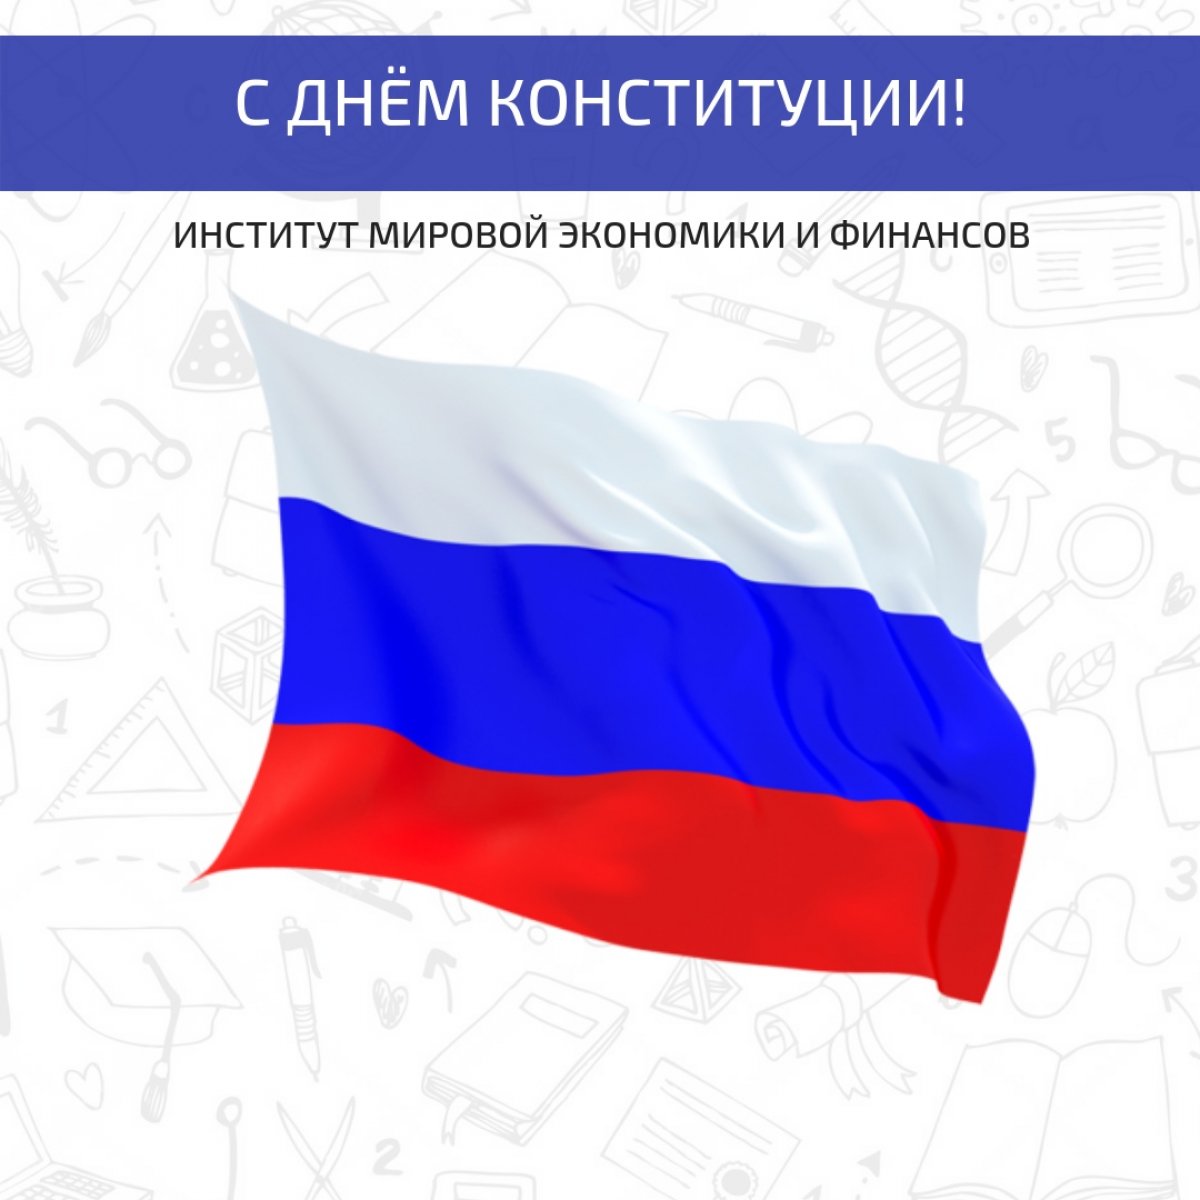 Поздравляем вас с одним из самых главных государственных праздников - Днем Конституции Российской Федерации!